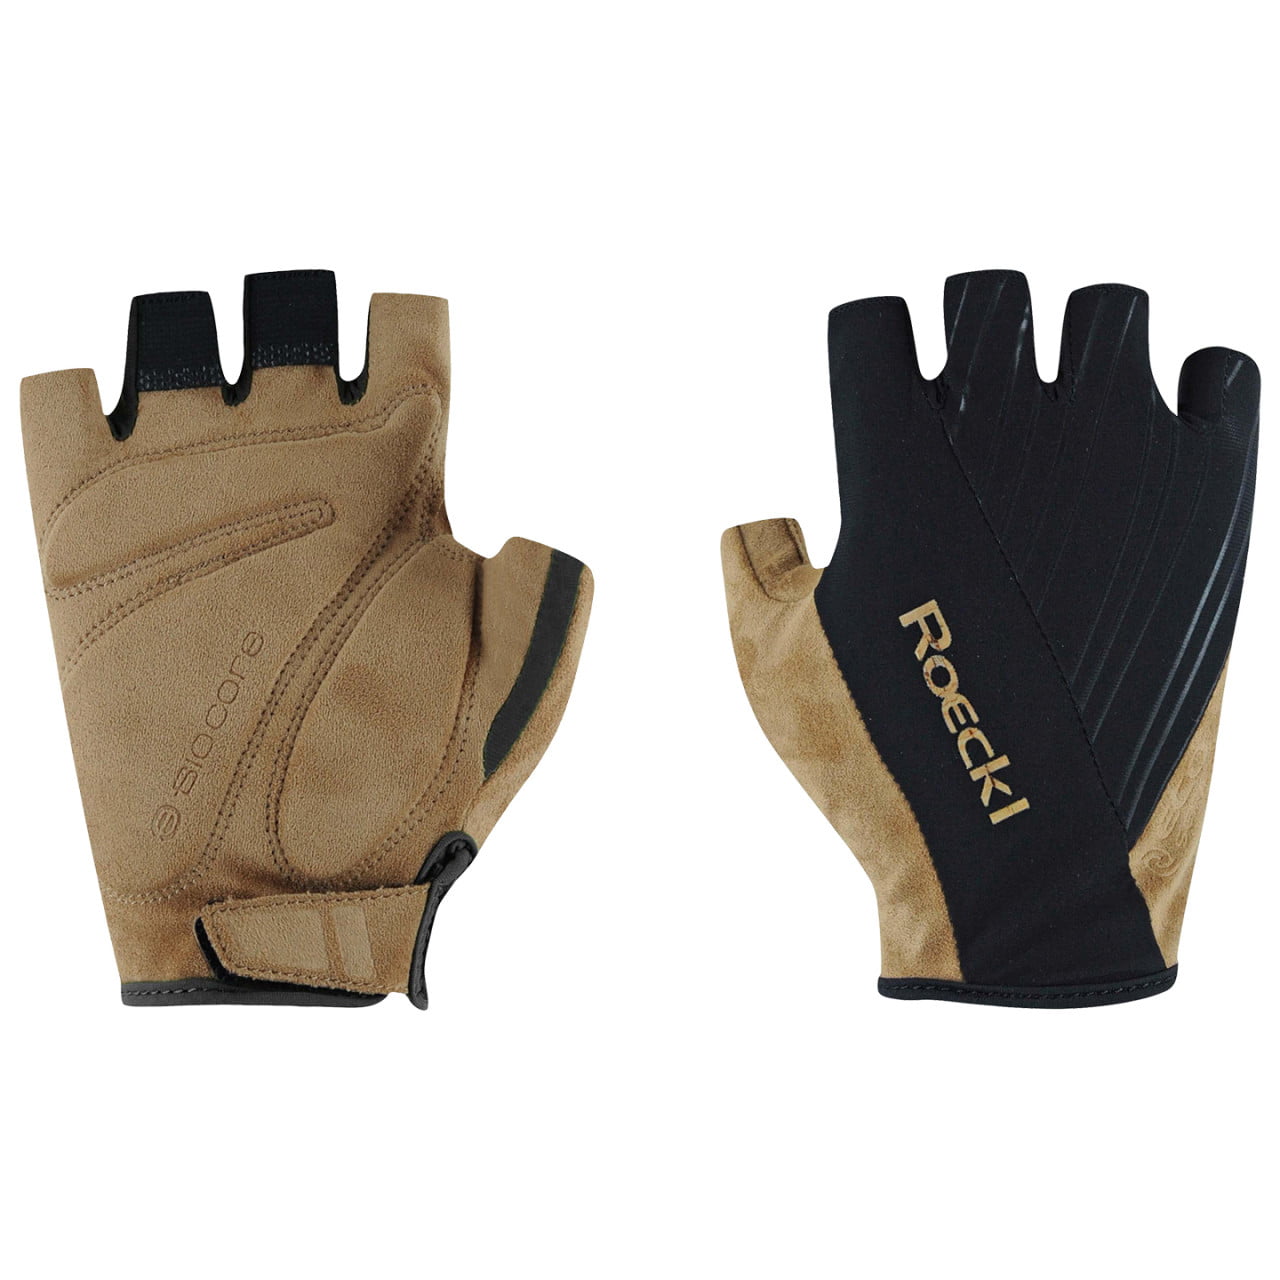 Isone MTB Gloves